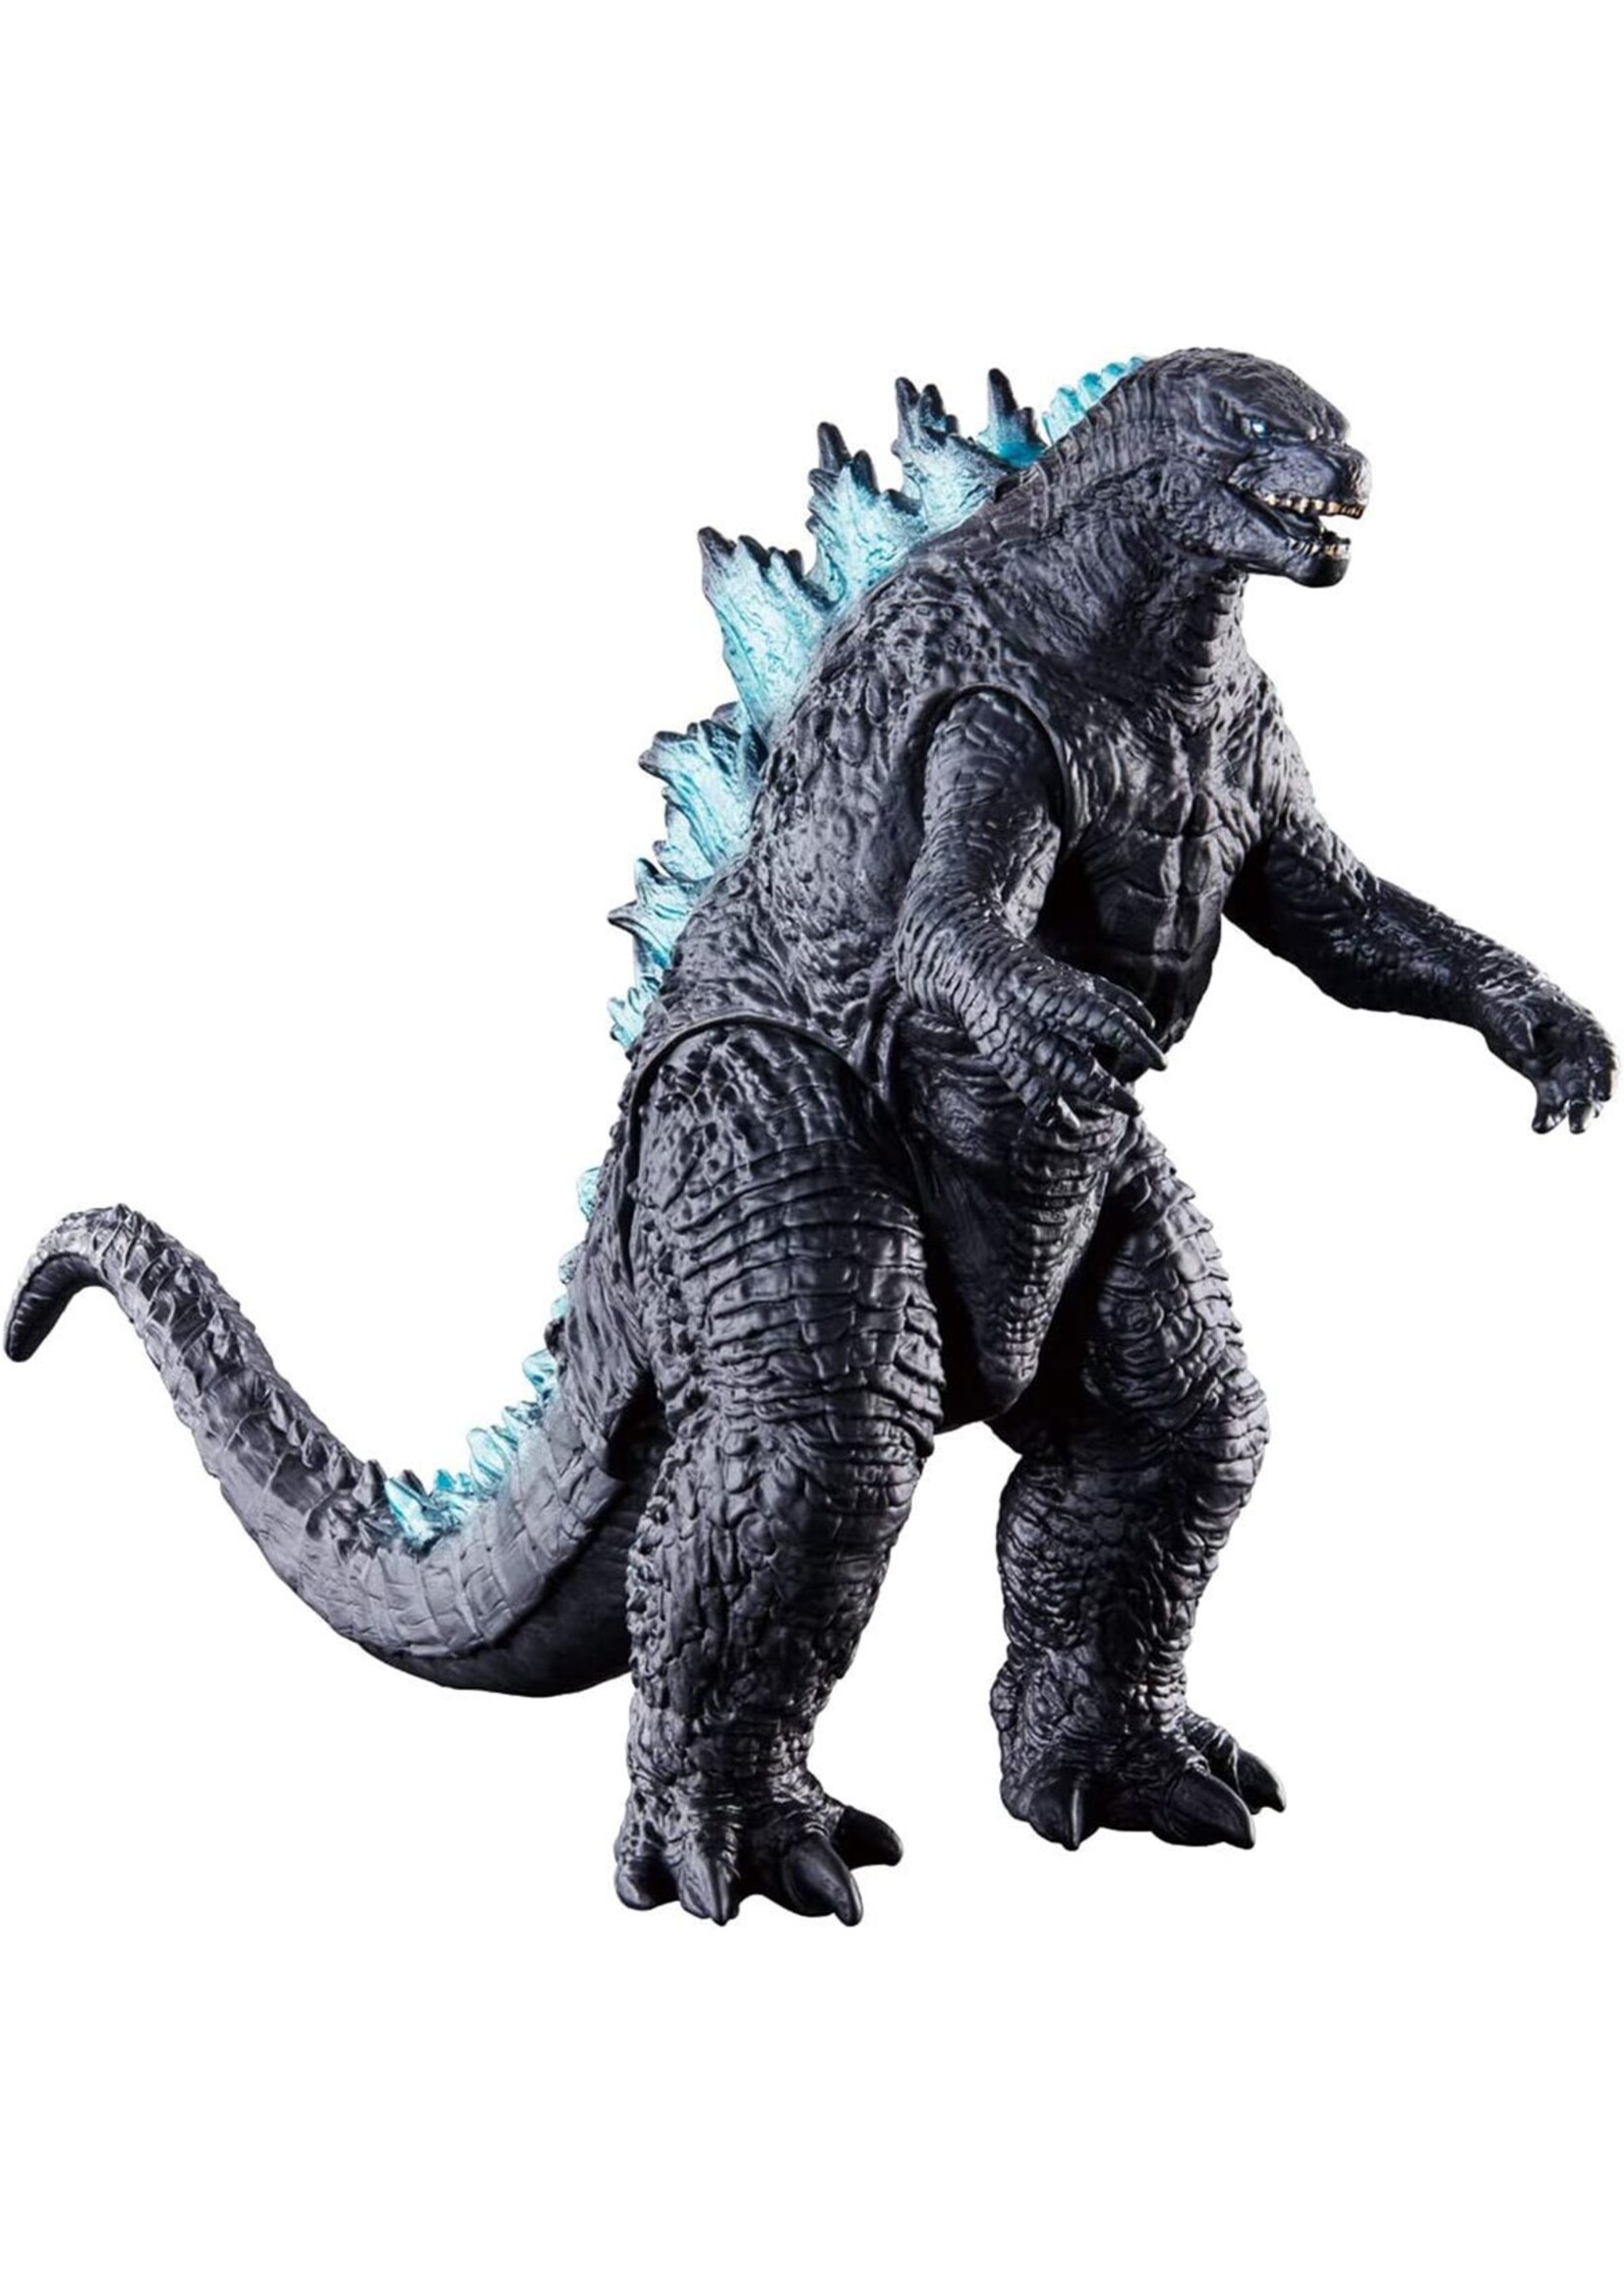 Bandai 92171 - "Godzilla King Of The Monsters" Wave 1 Vinyl Figure - Godzilla